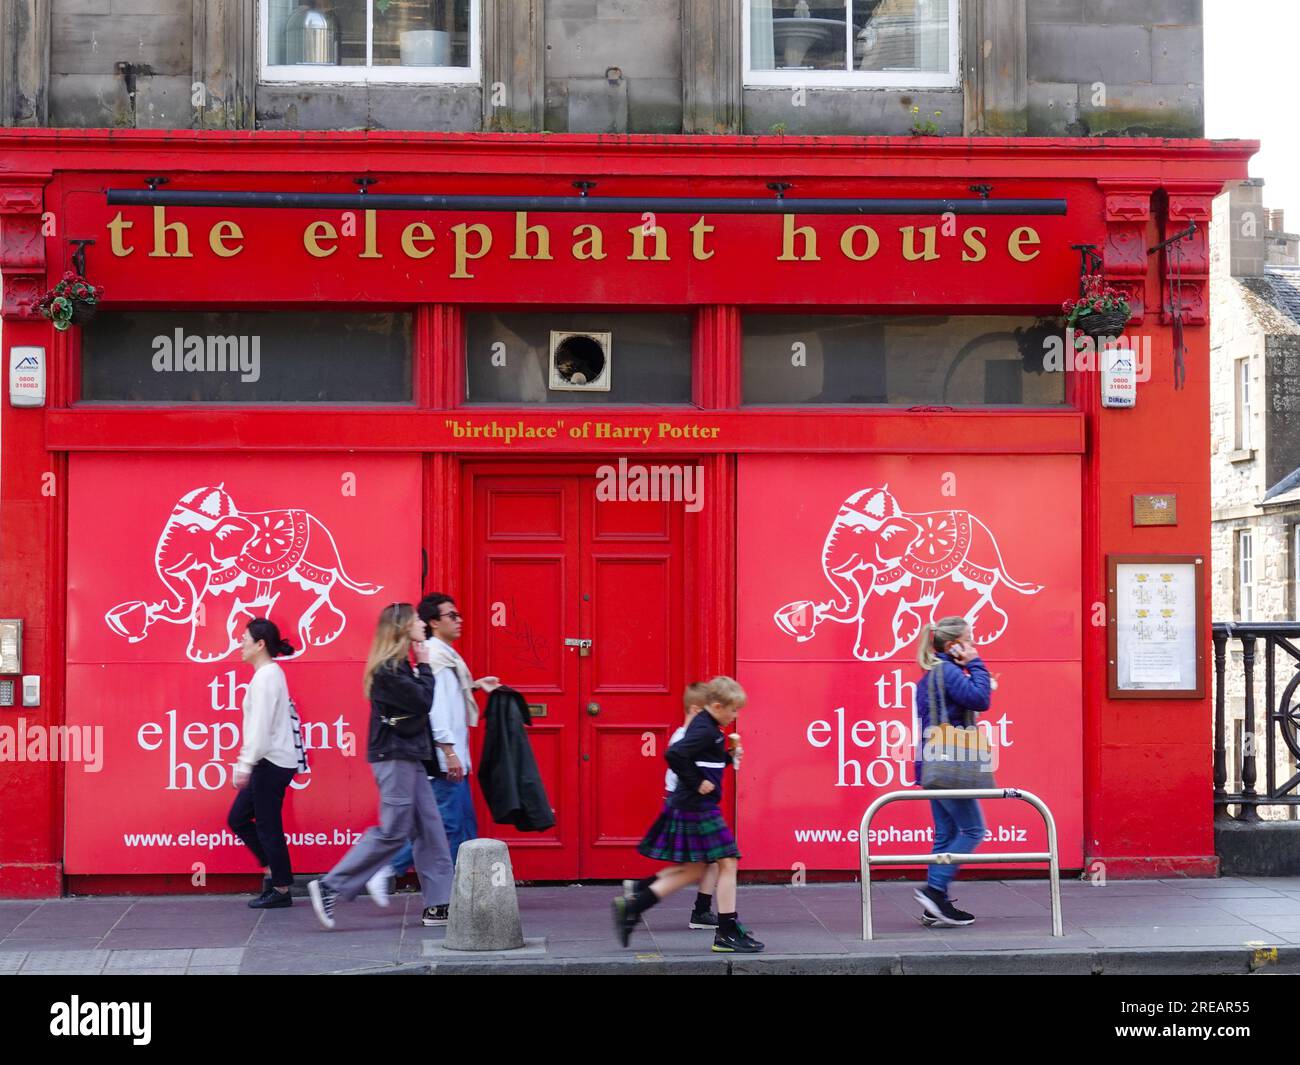 I bambini che indossano i kilt, e altri, camminano davanti all'Elephant House, caffetteria e ristorante, chiuso a causa di un incendio nel 2021, Edimburgo, Scozia, Regno Unito. Foto Stock